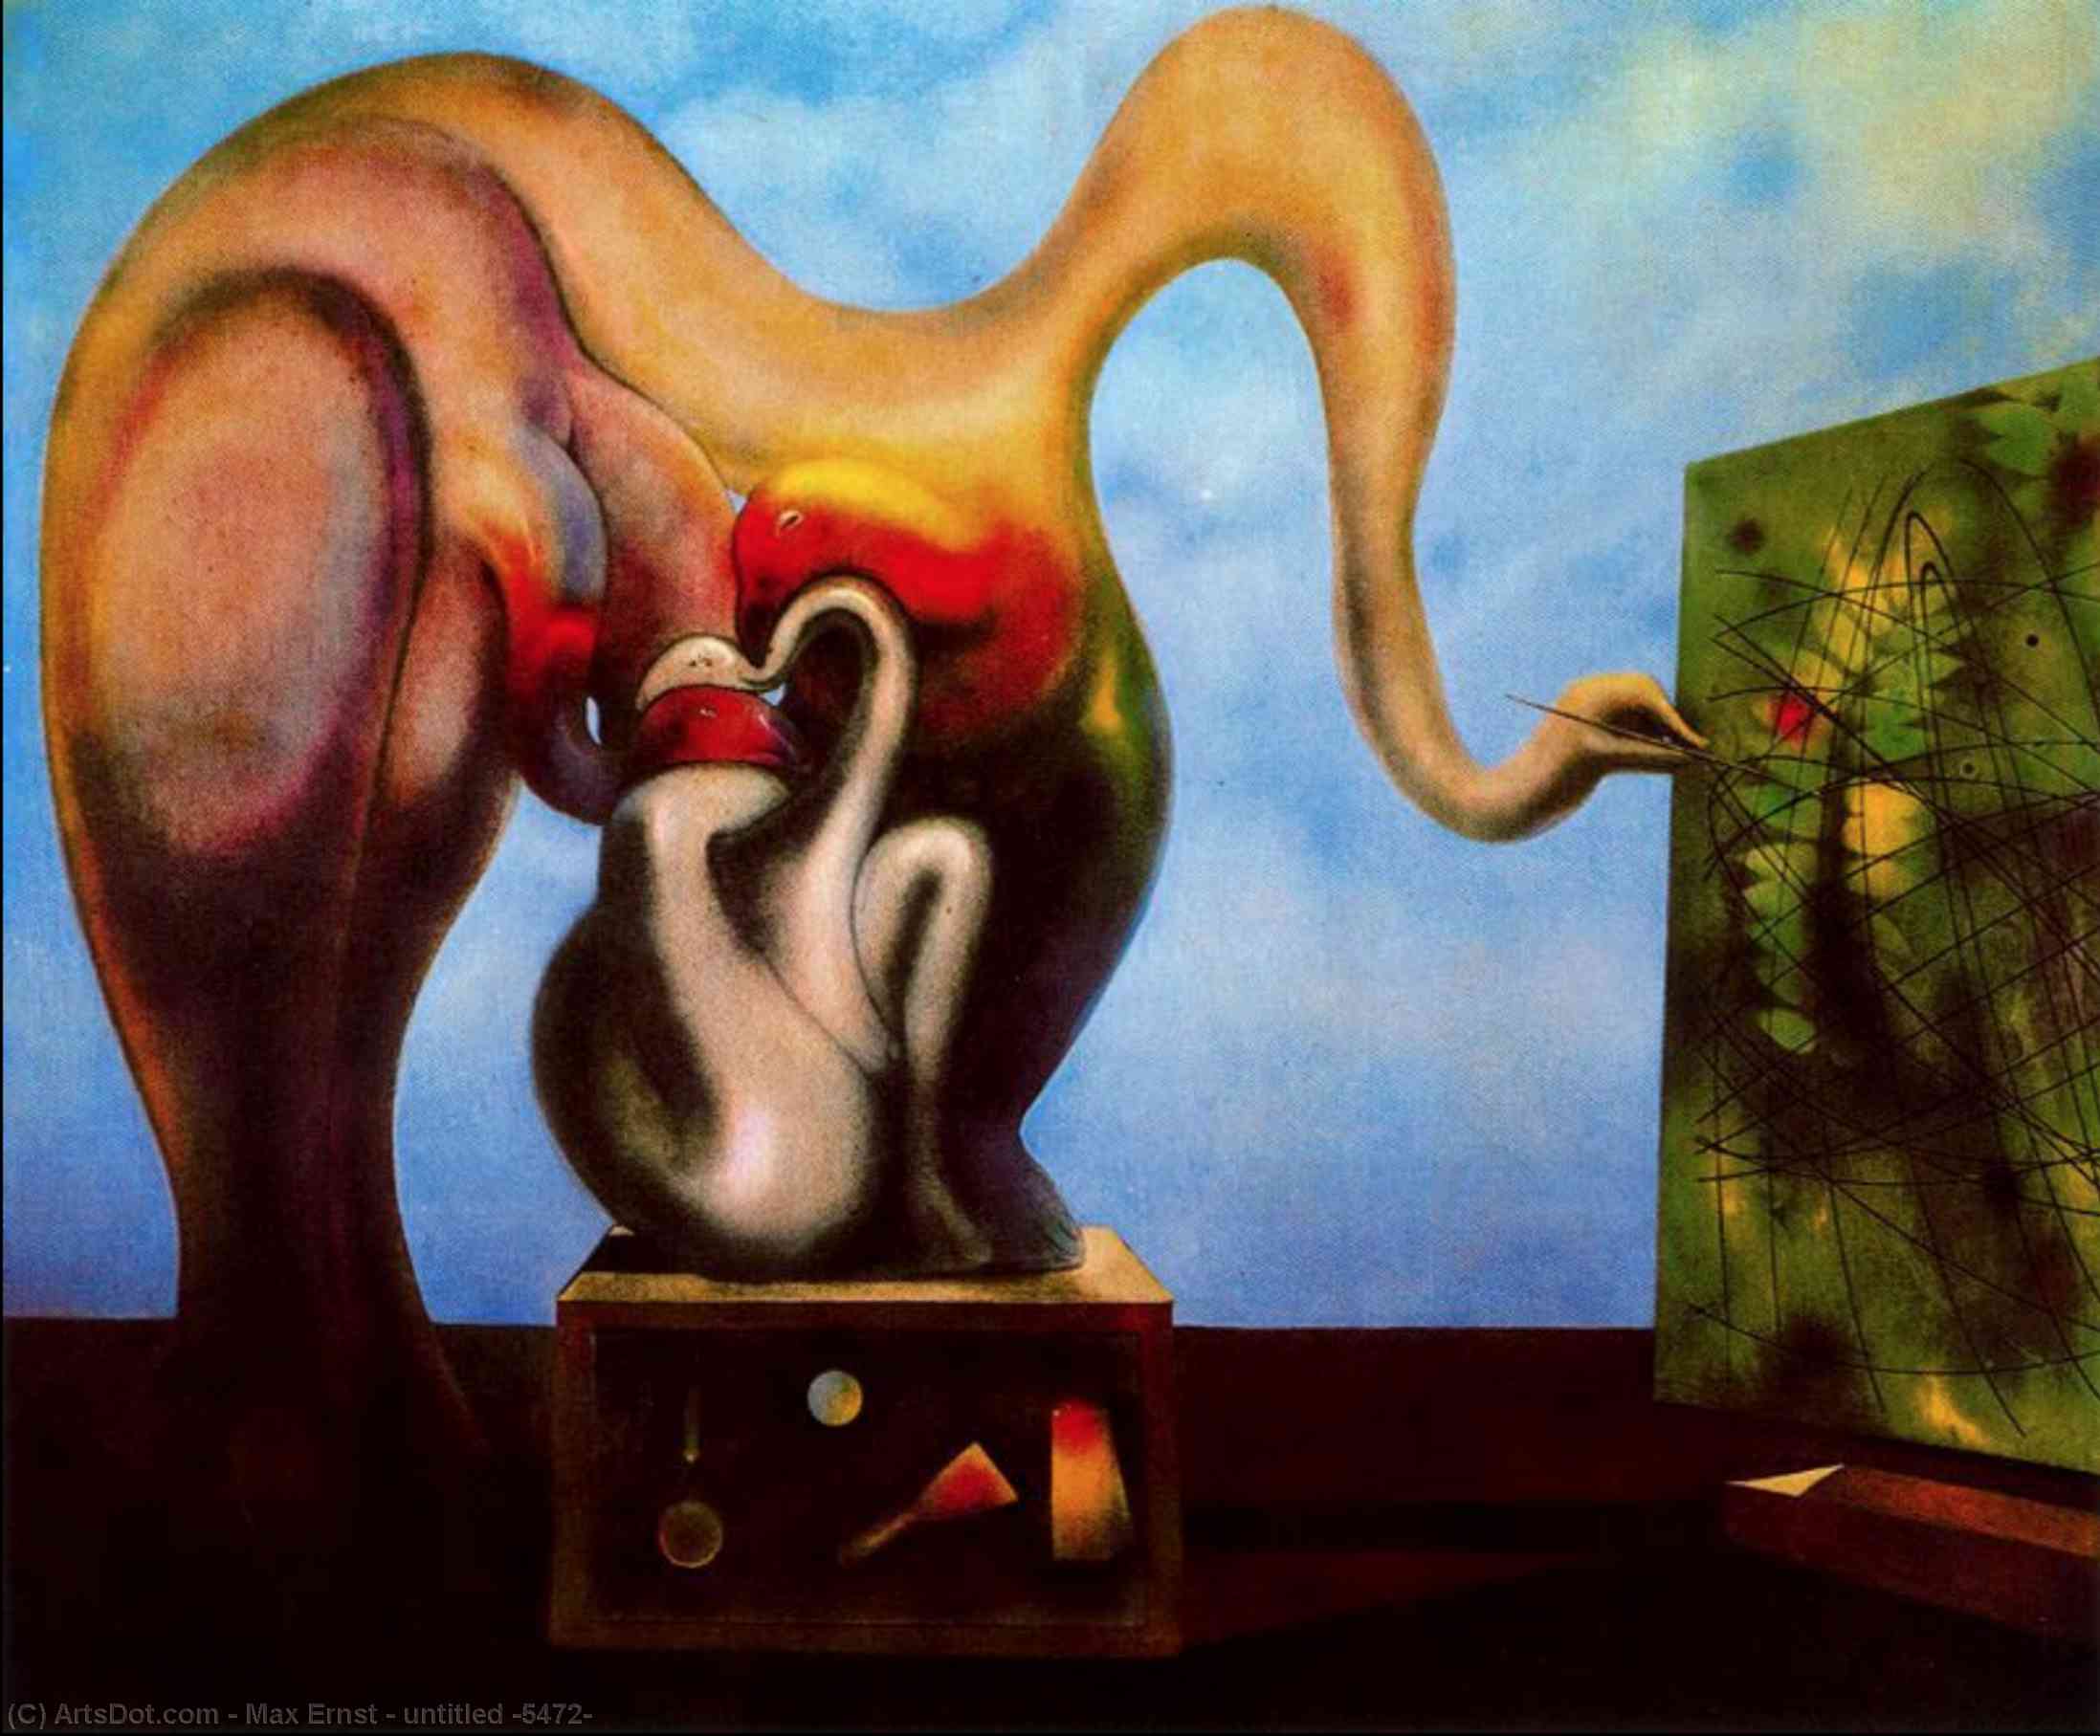 Wikioo.org - Bách khoa toàn thư về mỹ thuật - Vẽ tranh, Tác phẩm nghệ thuật Max Ernst - untitled (5472)